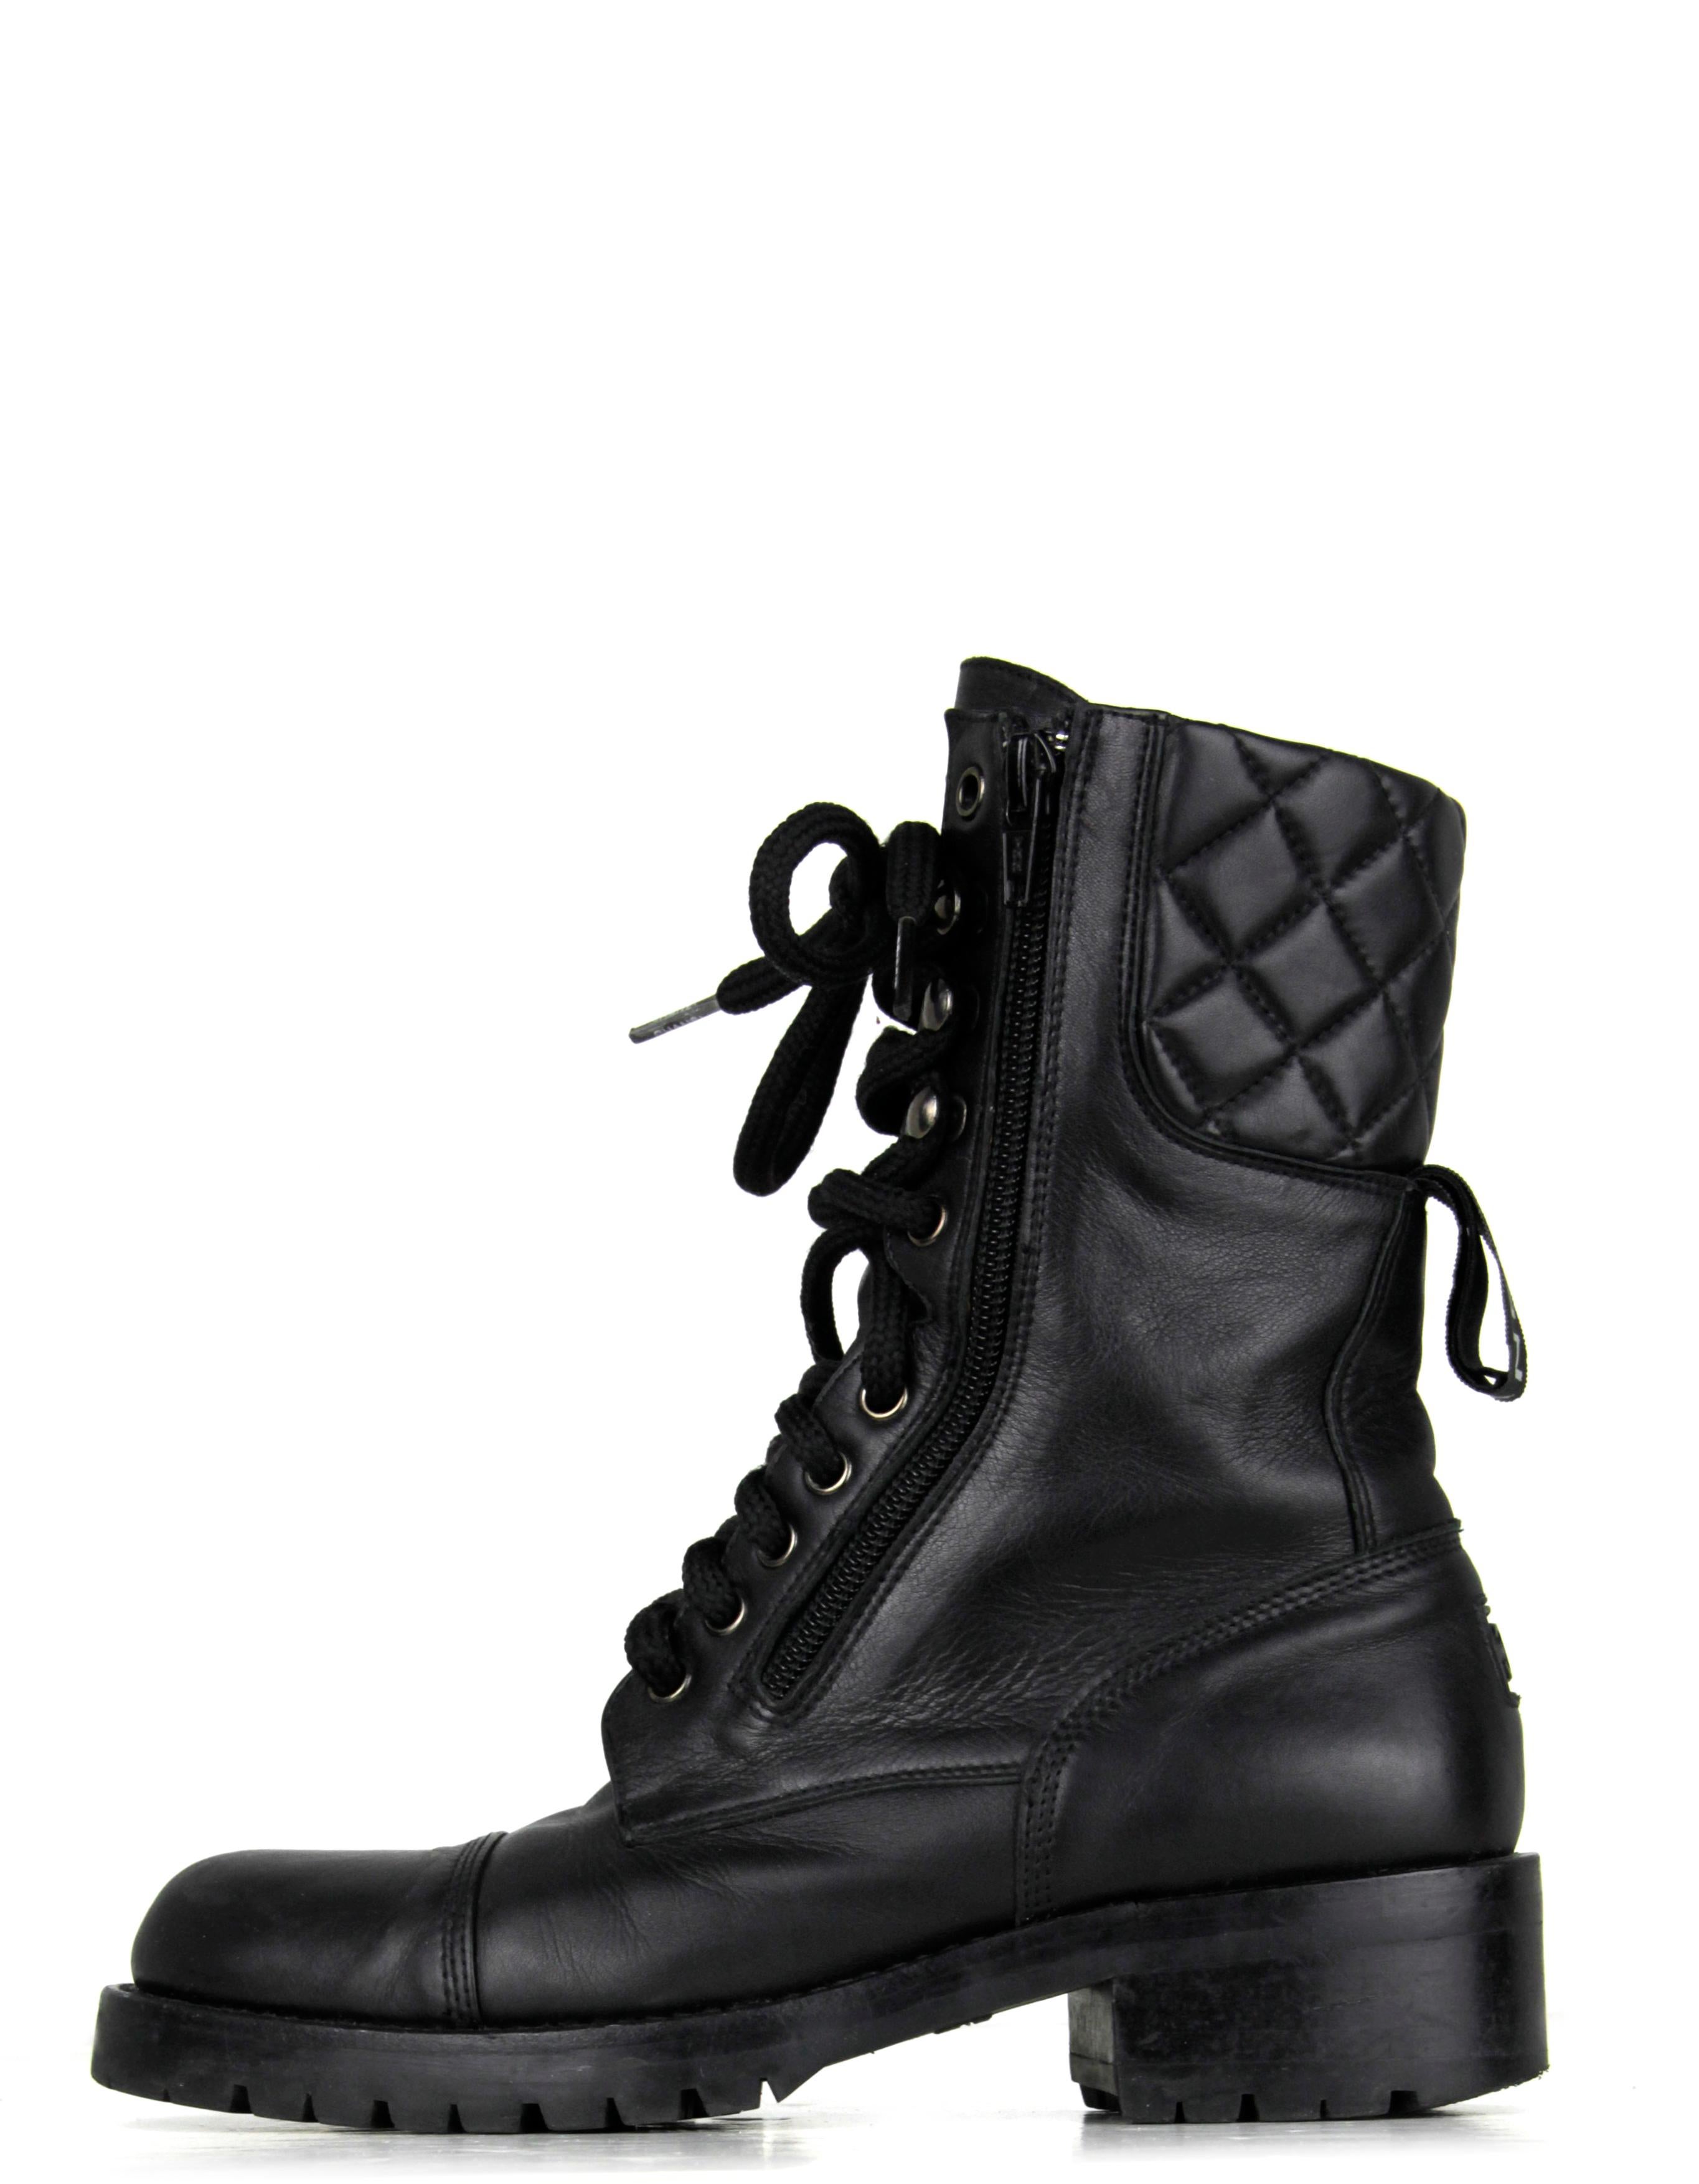 Chanel Vintage Schwarzes Leder Schnürstiefel Combat Stiefel. Mit gestepptem Detail und CC-Detail und CHANEL-Zug hinten am Stiefel

Hergestellt in: Spanien
Farbe: Schwarz
Materialien: Leder
Verschluss/Öffnung: Schnürung und doppelseitige